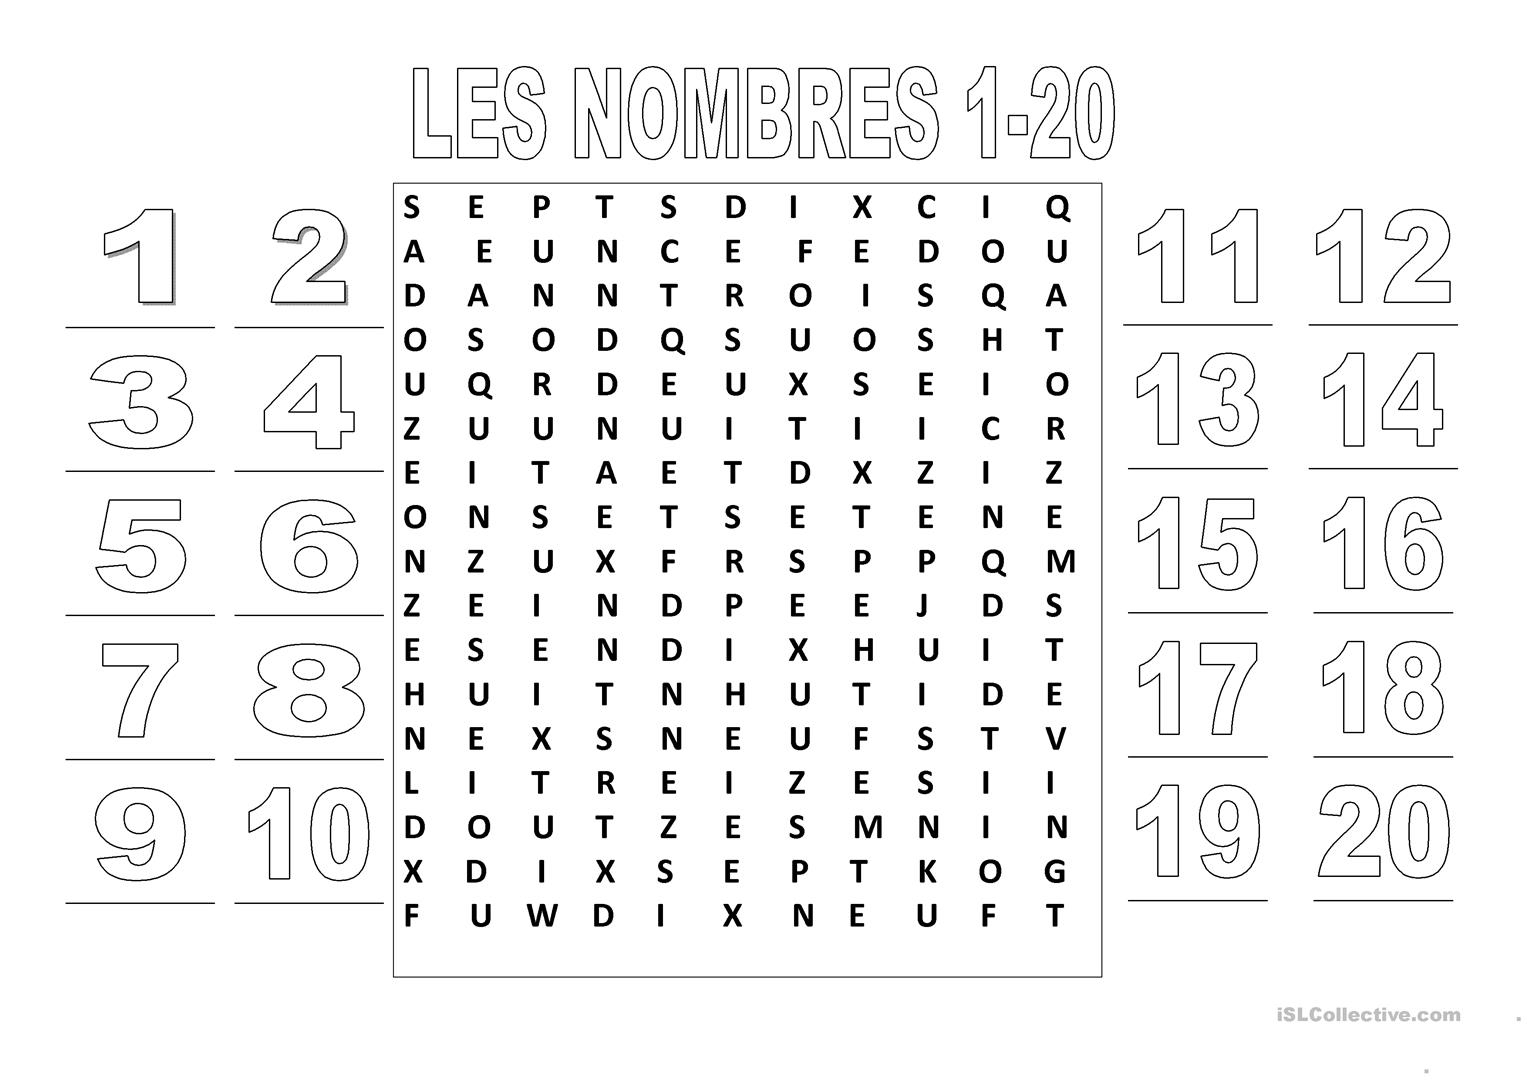 Les Nombres 1-20 (Mots Croisés) - Français Fle Fiches à Les Mots Croisés Gratuits